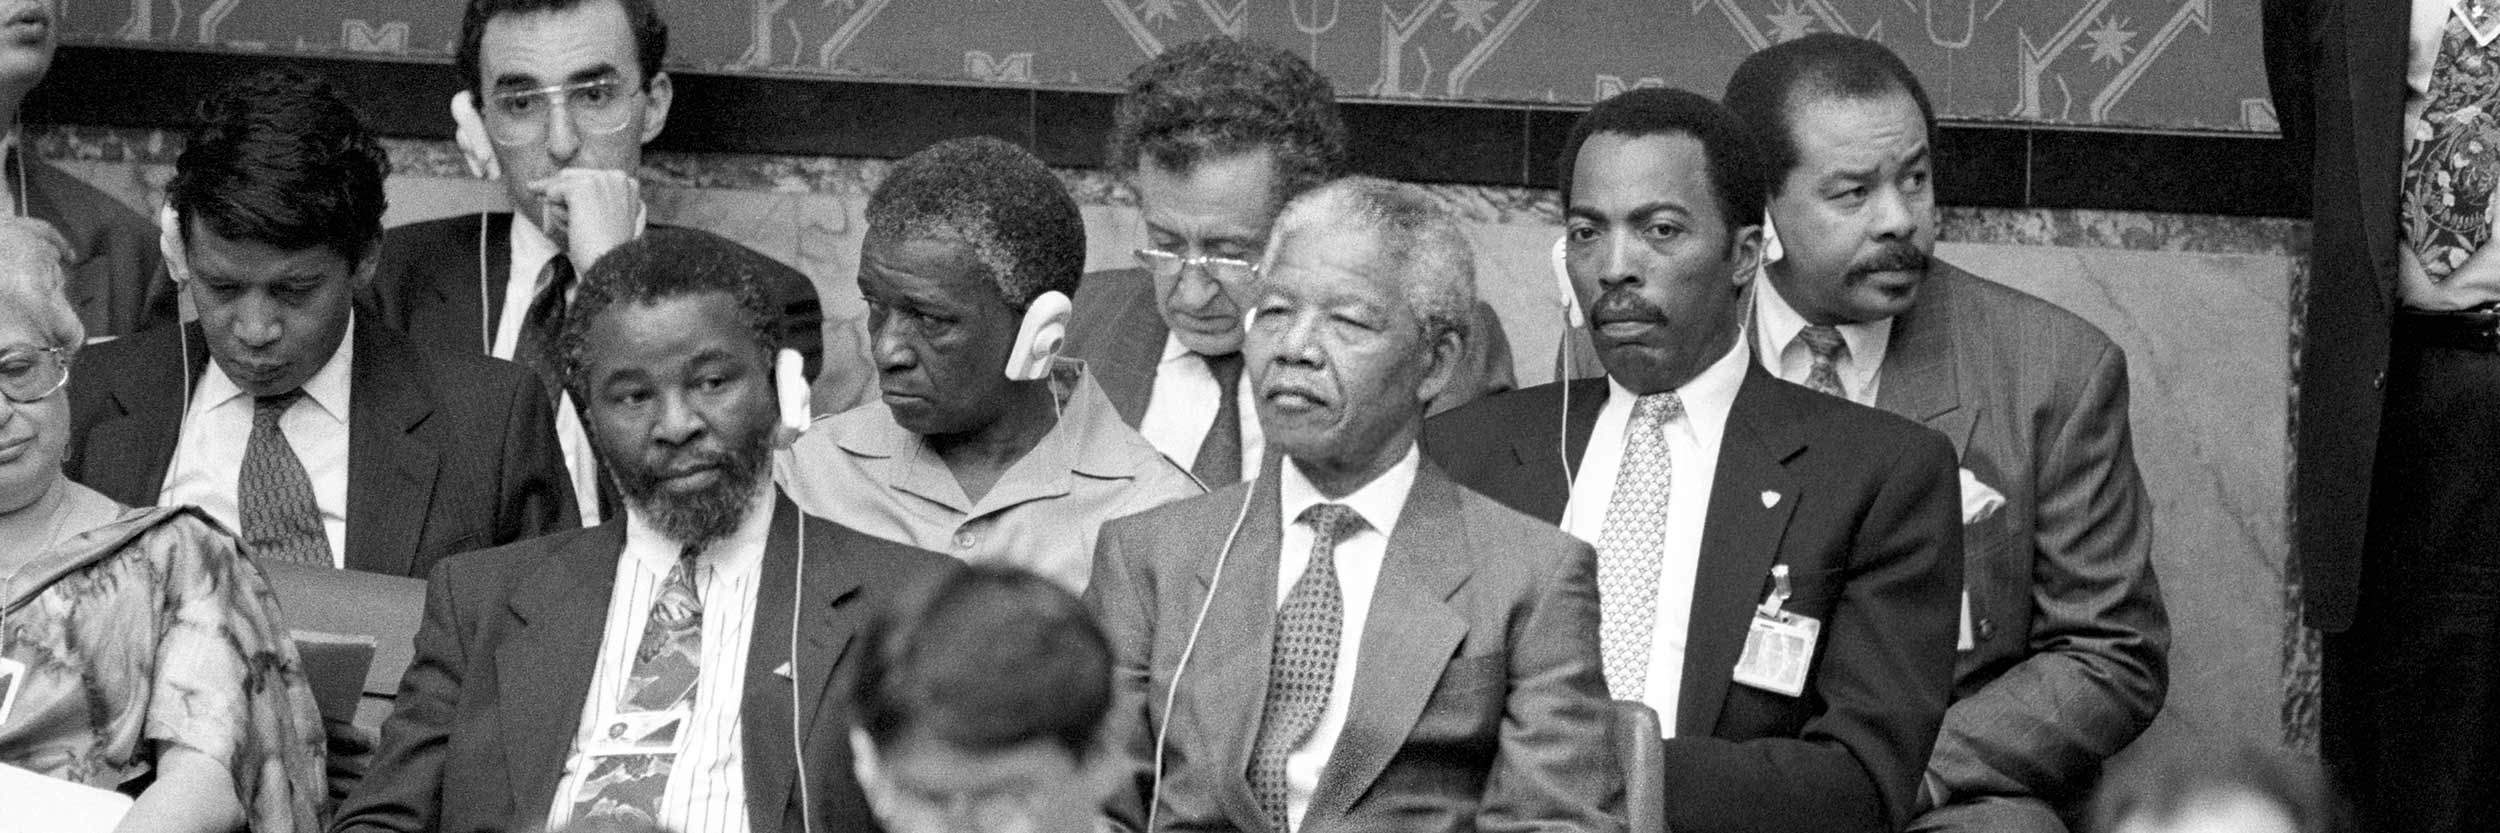 Nelson Mandela, Président du Congrès national africain (ANC), au milieu, et des membres de l'ANC écoutent le débat du Conseil de sécurité sur la situation en Afrique du Sud. UN Photo/Milton Grant